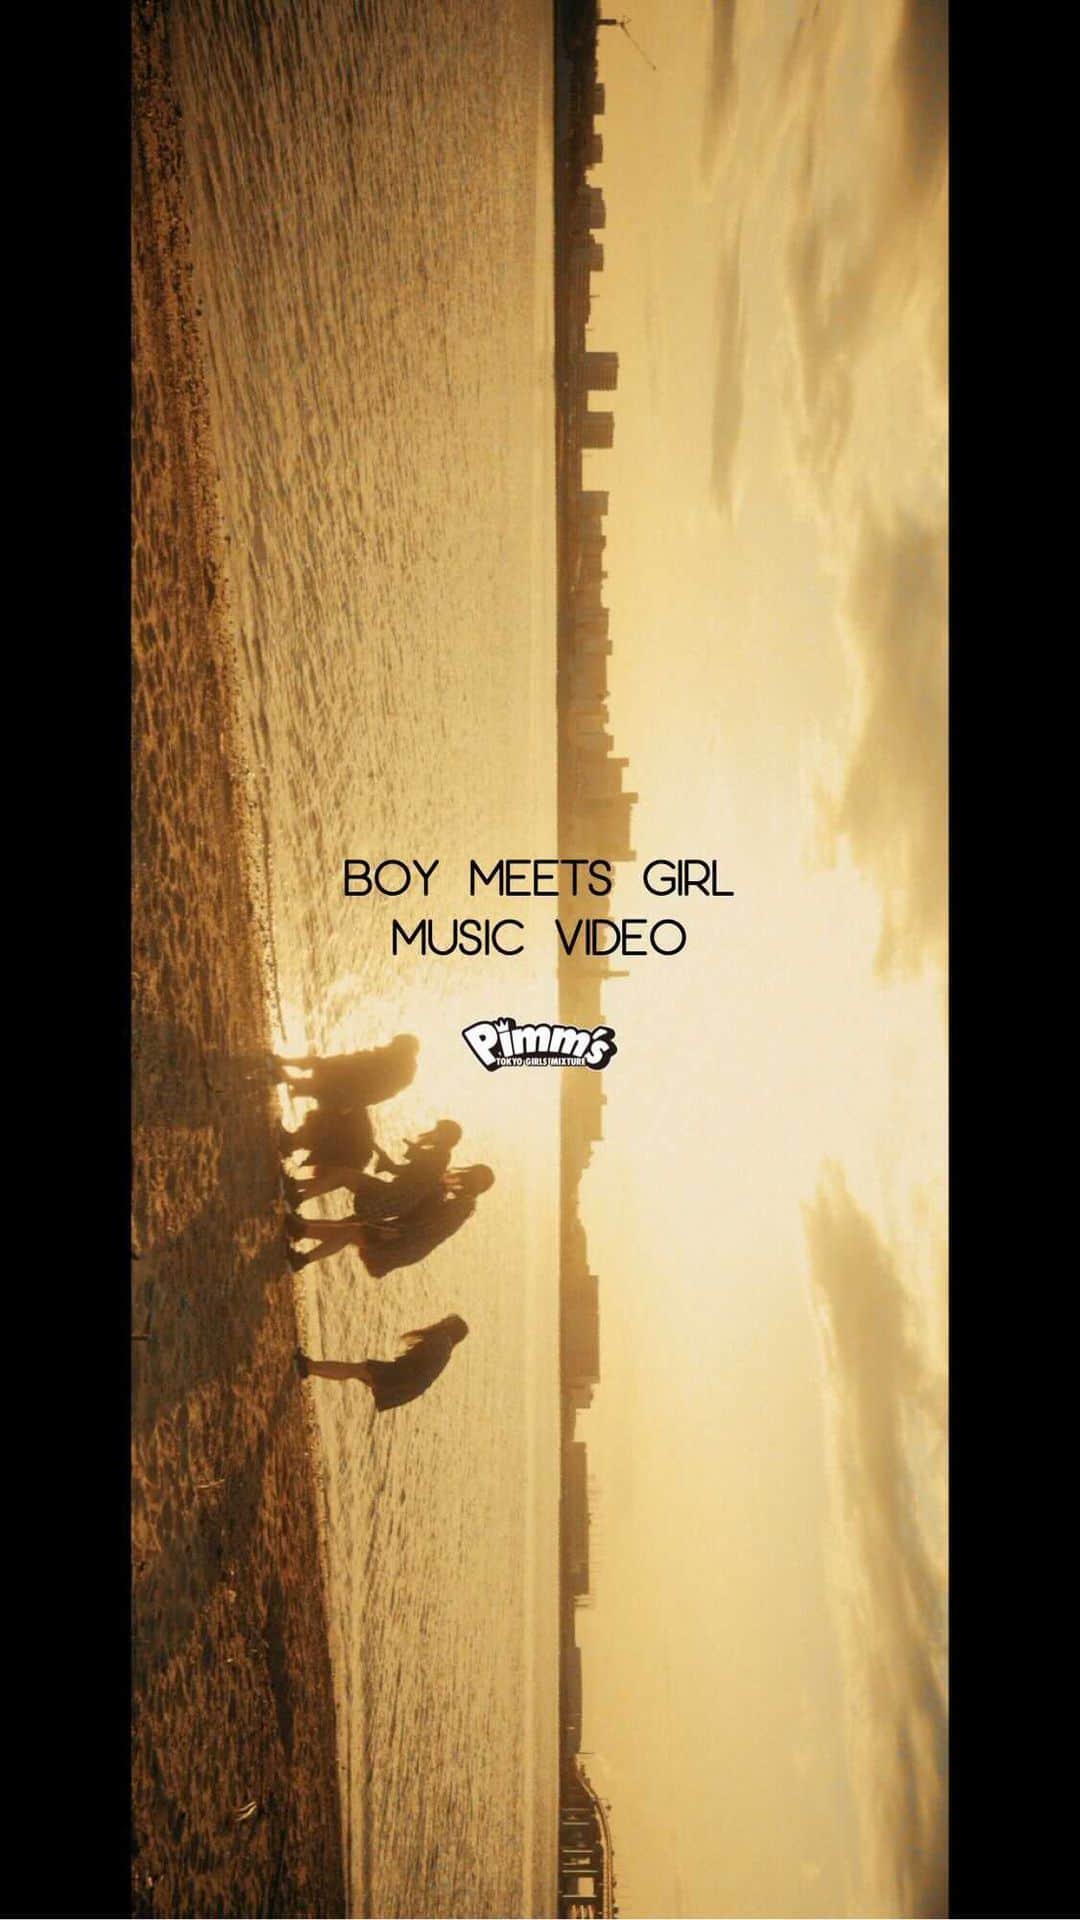 Pimm's【公式】のインスタグラム：「2020年11月1日リリースのPimm's最新曲「BOY MEETS GIRL」のミュージックビデオを公開！！  Music Video：https://youtu.be/dsiLWYjHLAg Download Link：https://linkco.re/etUpV5U5  ▼「BOY MEETS GIRL」 Lyrics: KO-JI ZERO THREE Music: Hidetoshi Nishihara Arranged by Hidetoshi Nishihara Song: Pimm’s Produced by KO-JI ZERO THREE  Music Video ■監督 KOJI ZERO THREE ■助監督 中嶋 淳志  Ah Ah Blue time プラスマイナスの無い感情は あの日々に溶けていく 後悔に慣れたら 君の声 いつかまた 聞こえる日が来るだろう  今１人 このサブウェイ 抜けたら見える 晴れる空 でもあまり上を見ない あぁ何故だ？  そう言えばあの夜から いつまでも泣いて 落ち葉の上靴を鳴らして生きている  サヨナラの続きは ここじゃないよきっと 次の朝へ  BOY MEETS GIRL ボクは世界中のラブソング集め 影を誤魔化せれば キミといれたかな？  BOY MEETS GIRL 広い世界だって聞いたよ 迷いながらも見つけれた キミのこと忘れはしないだろう  また今日も　あのバスが 追い越していく この過去(きず)も色変えていくのかな あぁ嫌だ  どうしたらレンガの壁みたく時隠して 裏切るより少しだけでも早く前に  サヨナラの日 キミも泣いていたんだきっと 胸の中で  BOY MEETS GIRL ボクは世界中のラブソング 集め影を誤魔化せれば キミといれたかな？  BOY MEETS GIRL 広い世界だって聞いたよ 迷いながらも見つけれた キミのこと忘れはしないだろう  現在(いま)を逃さず 青になる信号 間違えたっていい  Ah Ah Blue sky 光りある今日は無いものだらけ 願うのはキミのまま それだけだ  BOY MEETS GIRL ボクは世界中のラブソング 集め影を誤魔化せれば キミといれたかな？  BOY MEETS GIRL 二度と探しはしないよ 約束なら曖昧だけど キミのこと忘れはしないだろう  Wow Wow Wow あの日々に溶けていく あの日々に  Wow Wow Wow 願うのはキミのまま それだけだ そしてボクは行く」